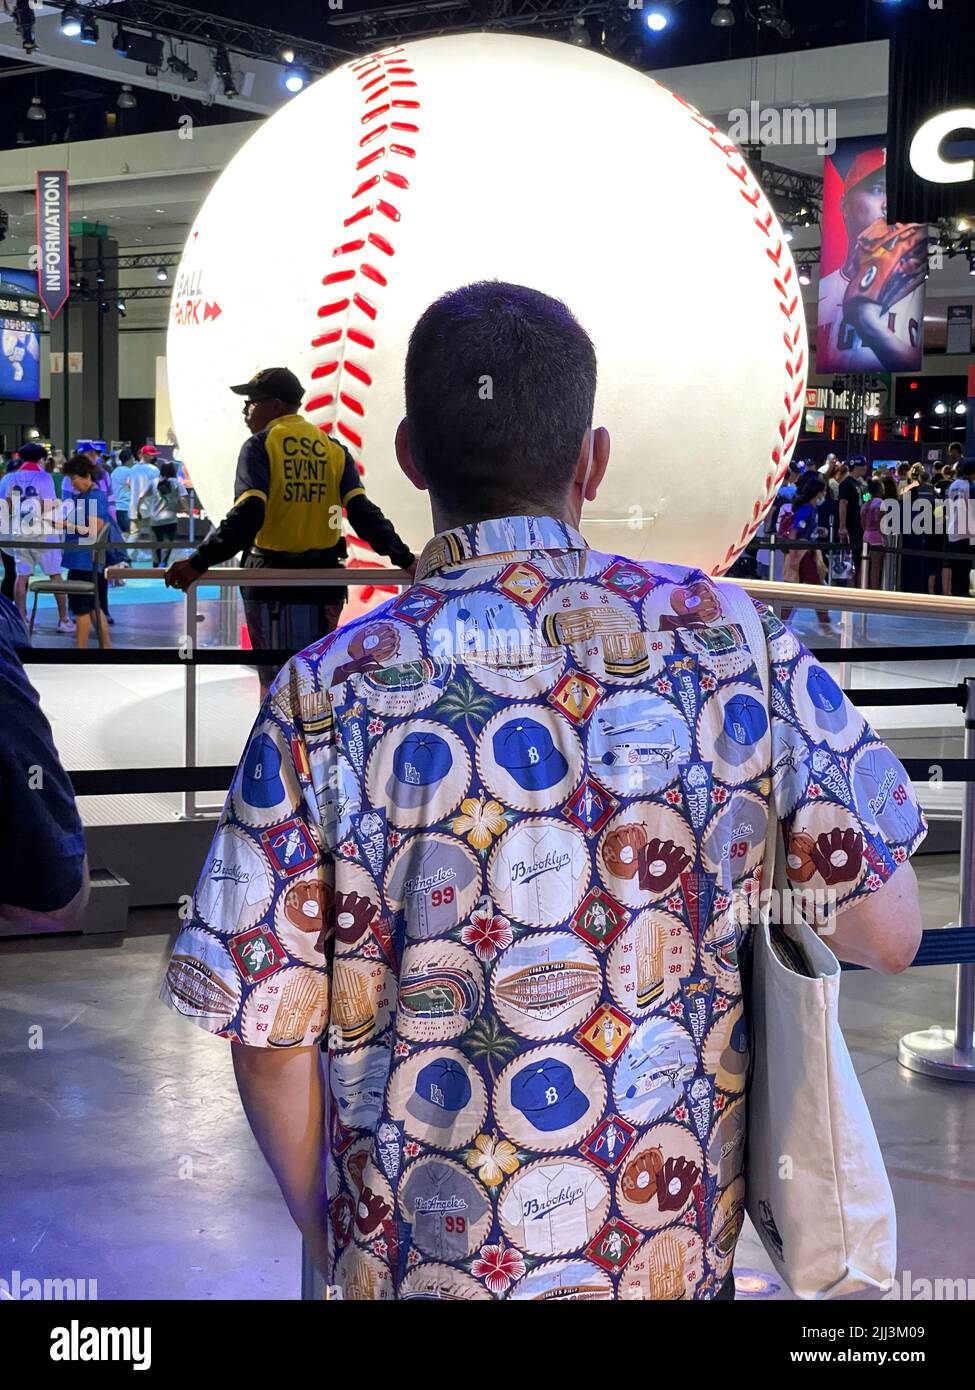 Ein Fan des Play Ball-Fanfestes, das das All-Star Game begleitet, trägt ein Hawaiihemd mit Brooklyn Dodgers-Motiv vor einem riesigen Baseballspiel. Stockfoto